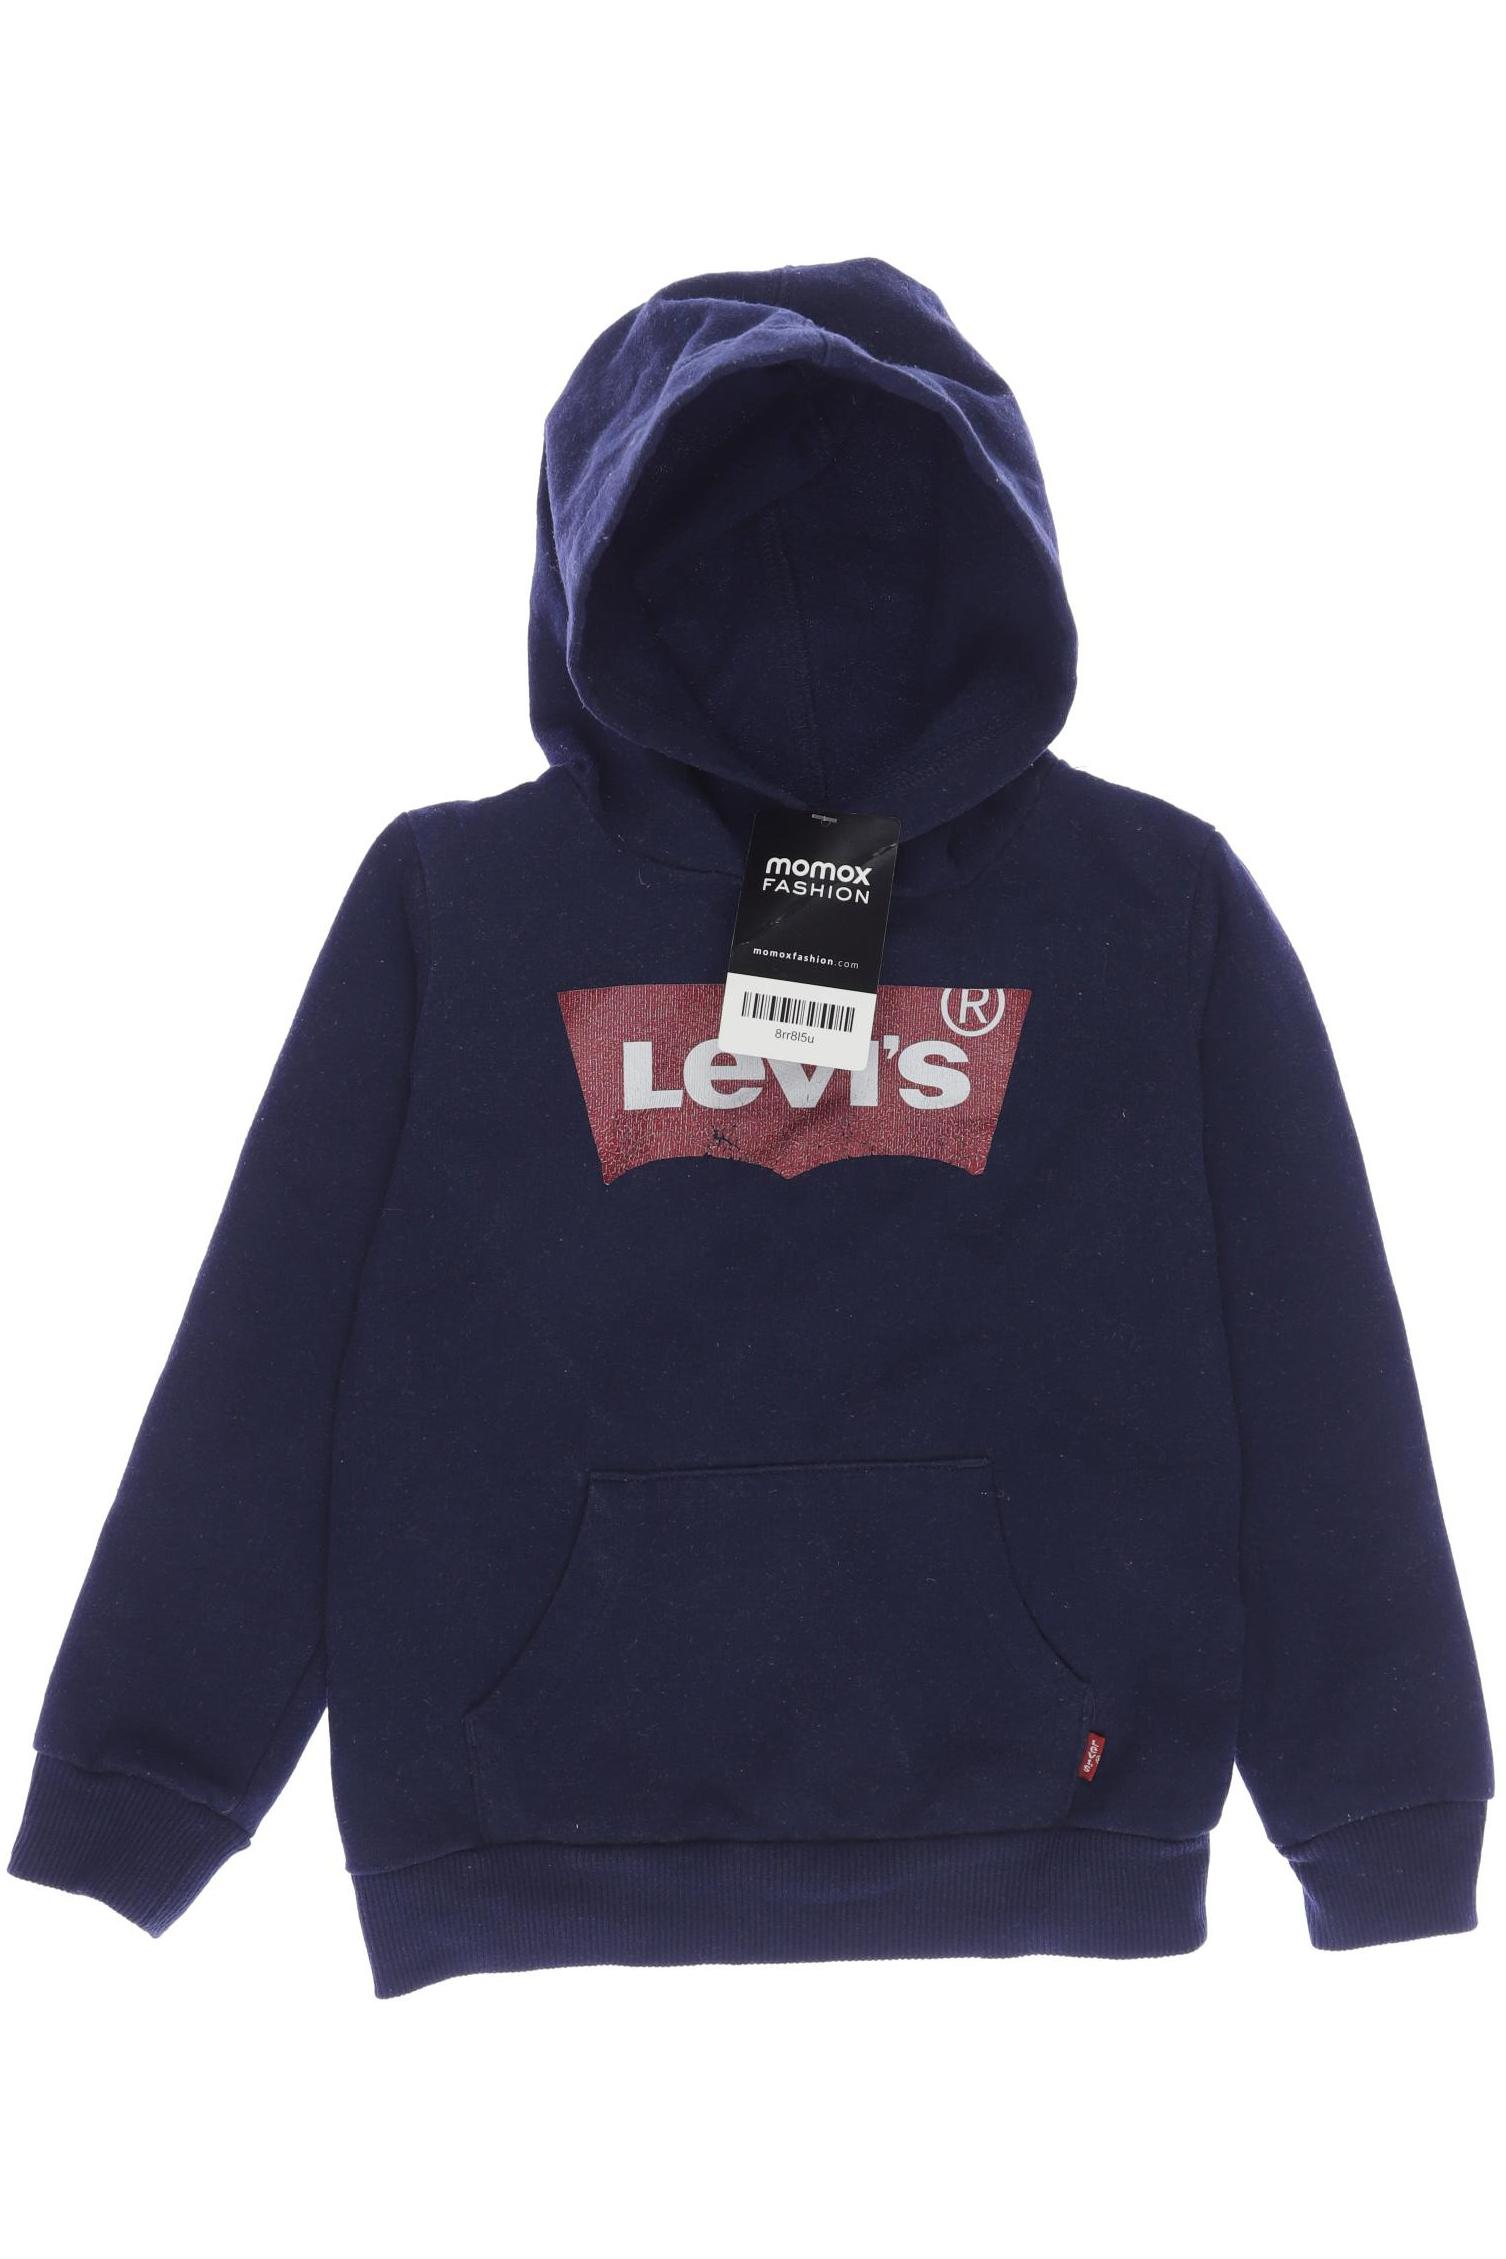 Levis Herren Hoodies & Sweater, marineblau, Gr. 104 von Levis